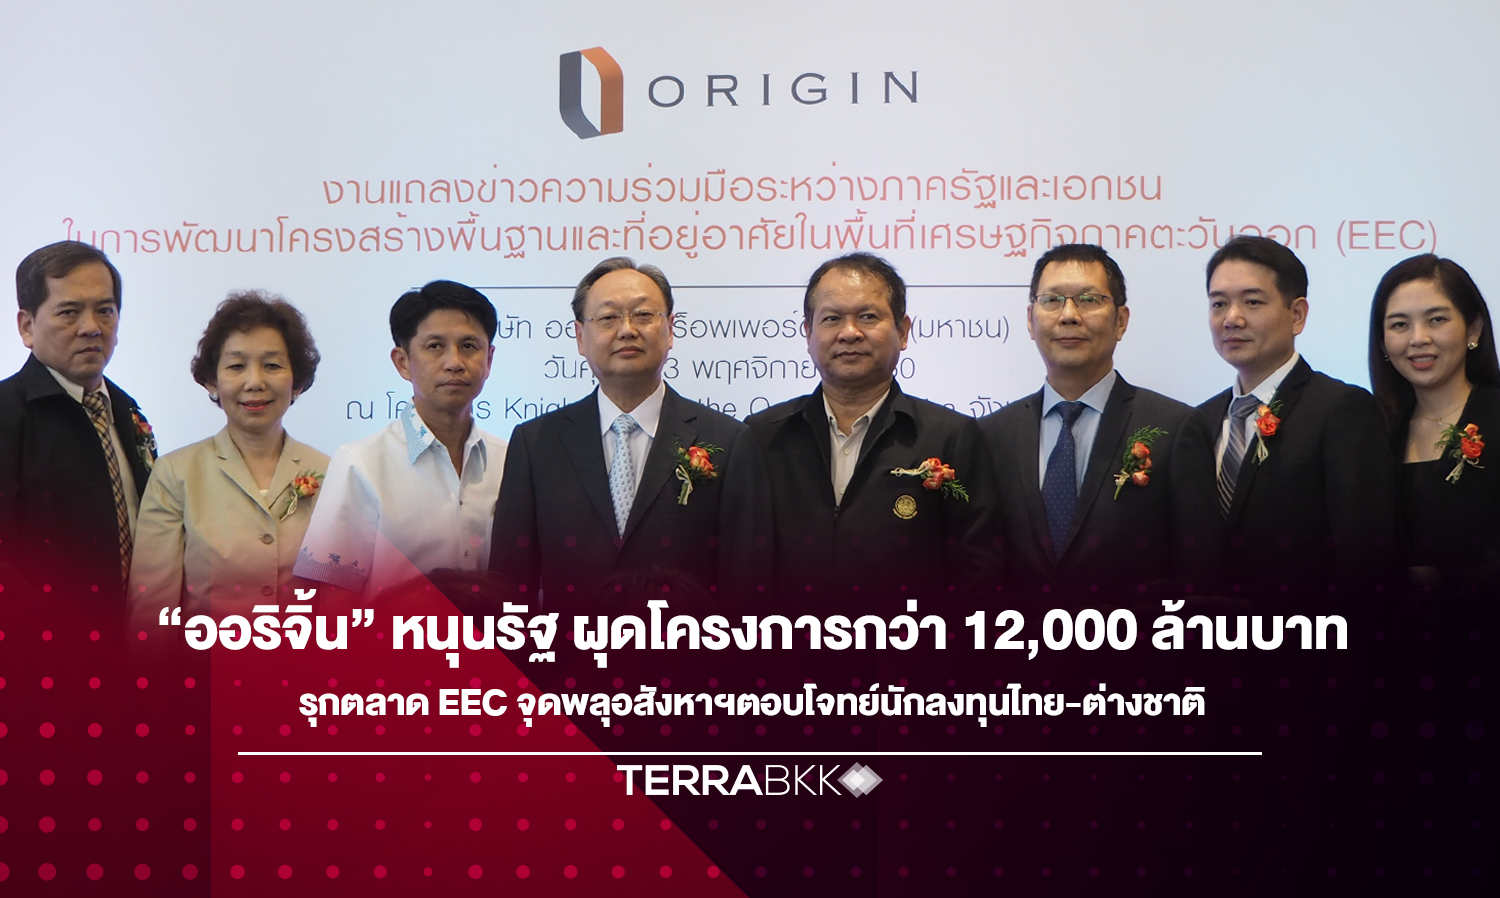 “ออริจิ้น” หนุนรัฐ ผุดโครงการกว่า 12,000 ล้านบาท รุกตลาด EEC จุดพลุอสังหาฯตอบโจทย์นักลงทุนไทย-ต่างชาติ